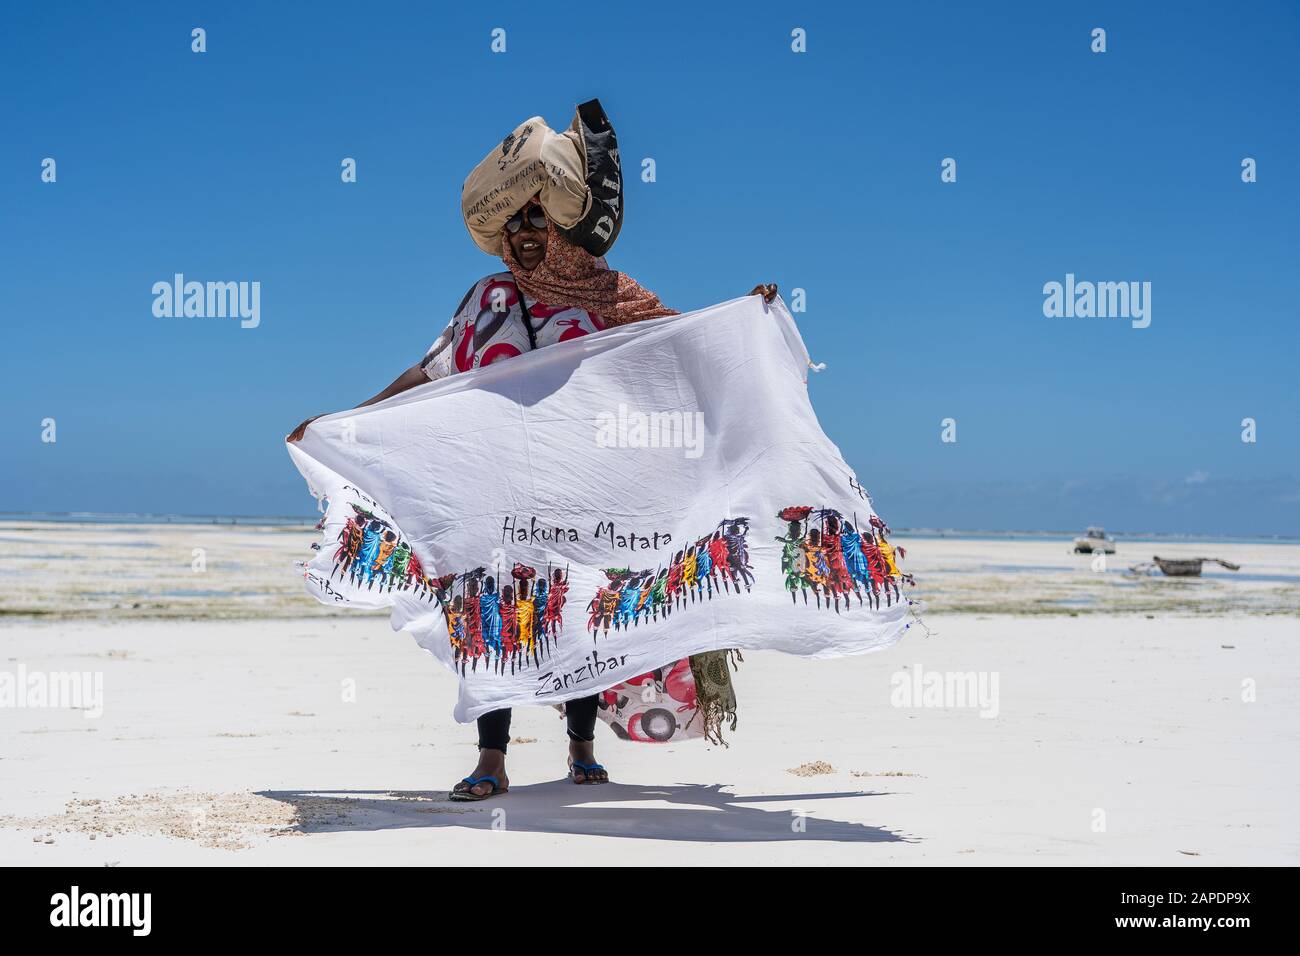 Zanzíbar, Tanzania - 28 de octubre de 2019 : una mujer africana vende ropa para turistas cerca del océano en la playa de arena de la isla de Zanzíbar, Tanz